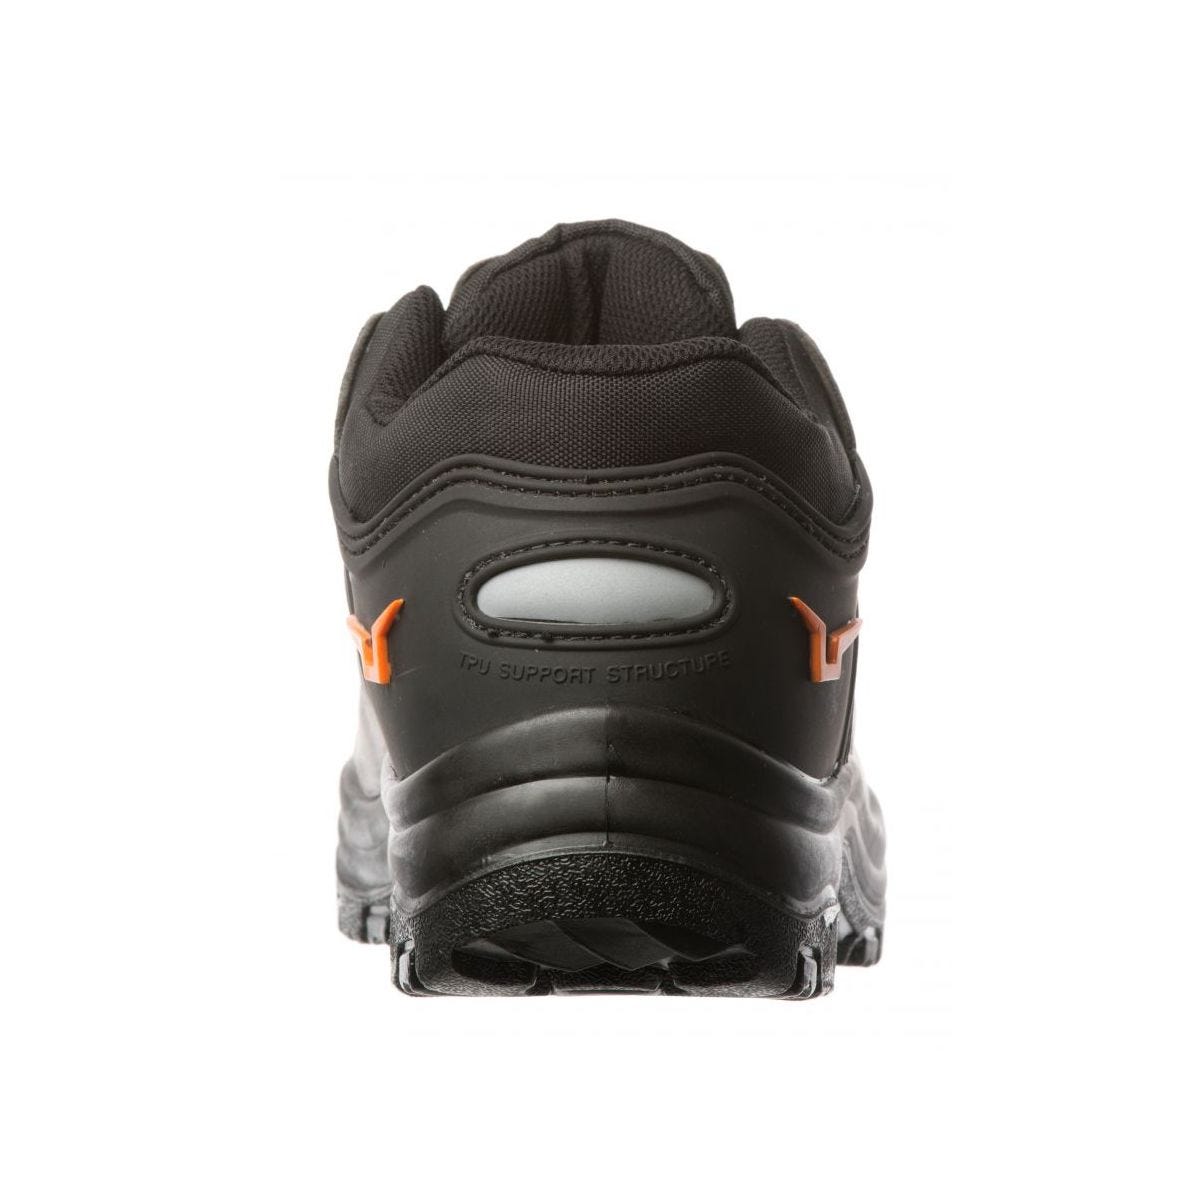 Chaussures de sécurité basses S3 SRC OPAL composite Noir - Coverguard - Taille 39 3